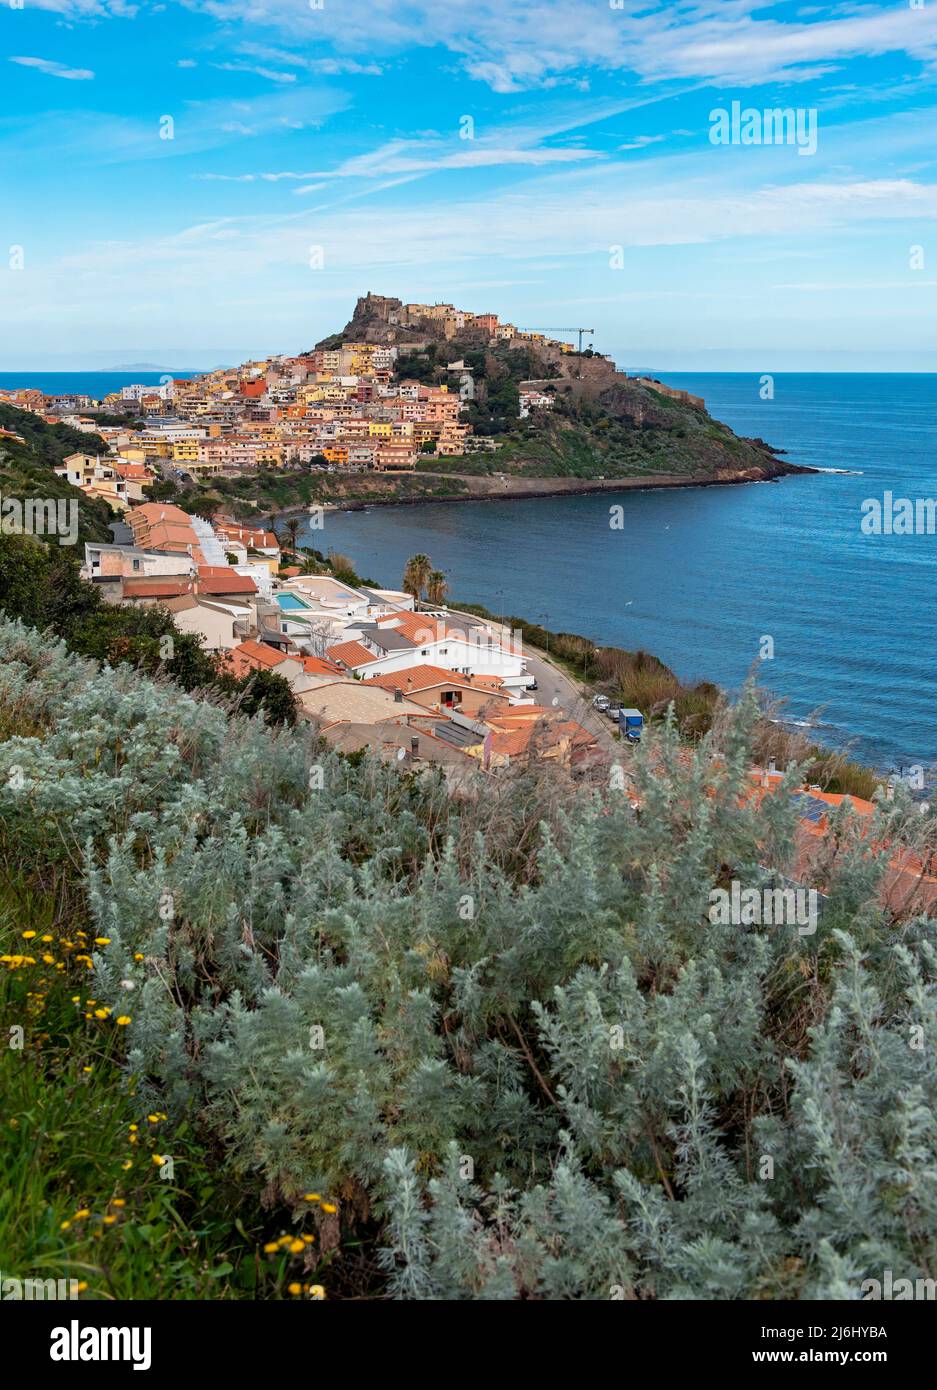 View of Castelsardo, Sardinia, Italy Stock Photo